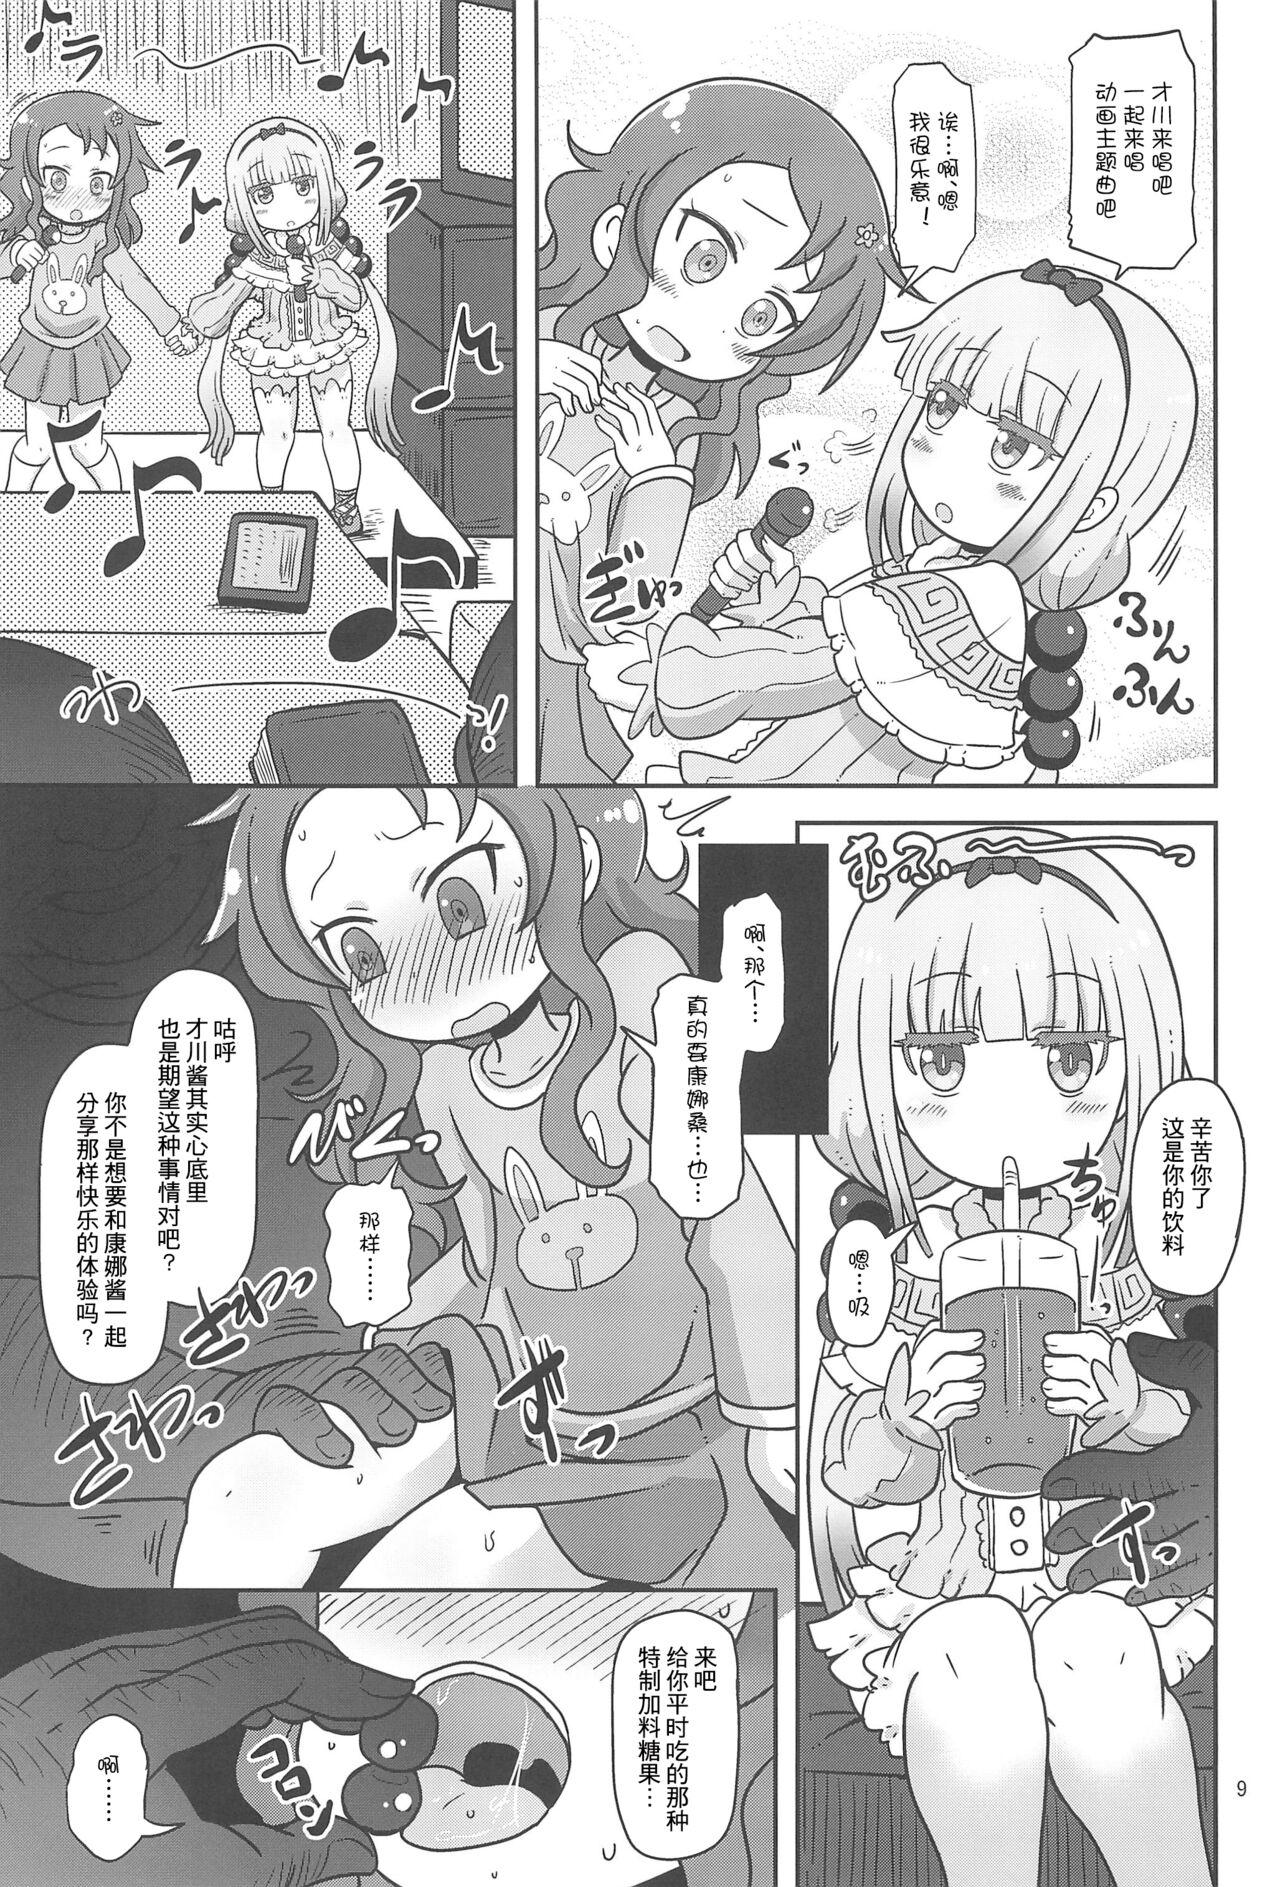 Hunks Dragonic Lolita Bomb! - Kobayashi san chi no maid dragon Class Room - Page 8